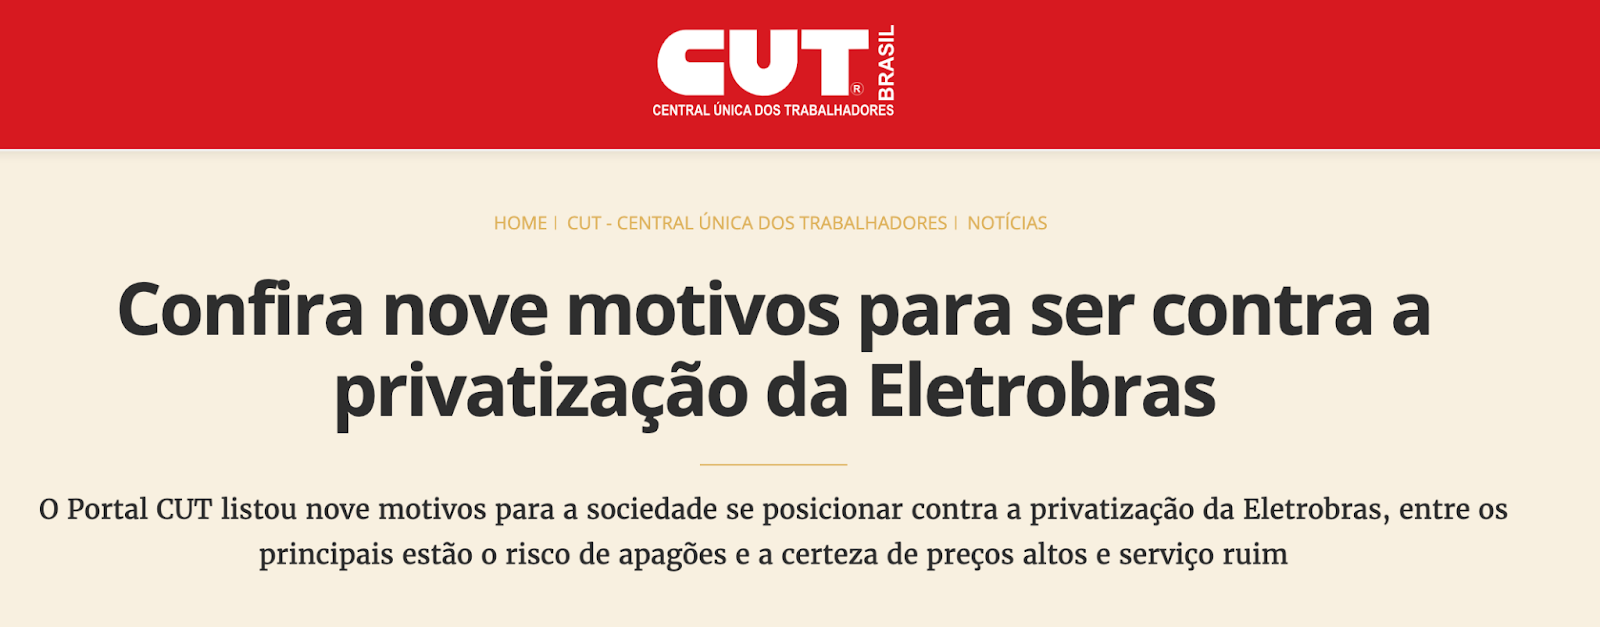 Manchete da CUT: "Confira nove motivos para ser contra a privatização da Eletrobras"